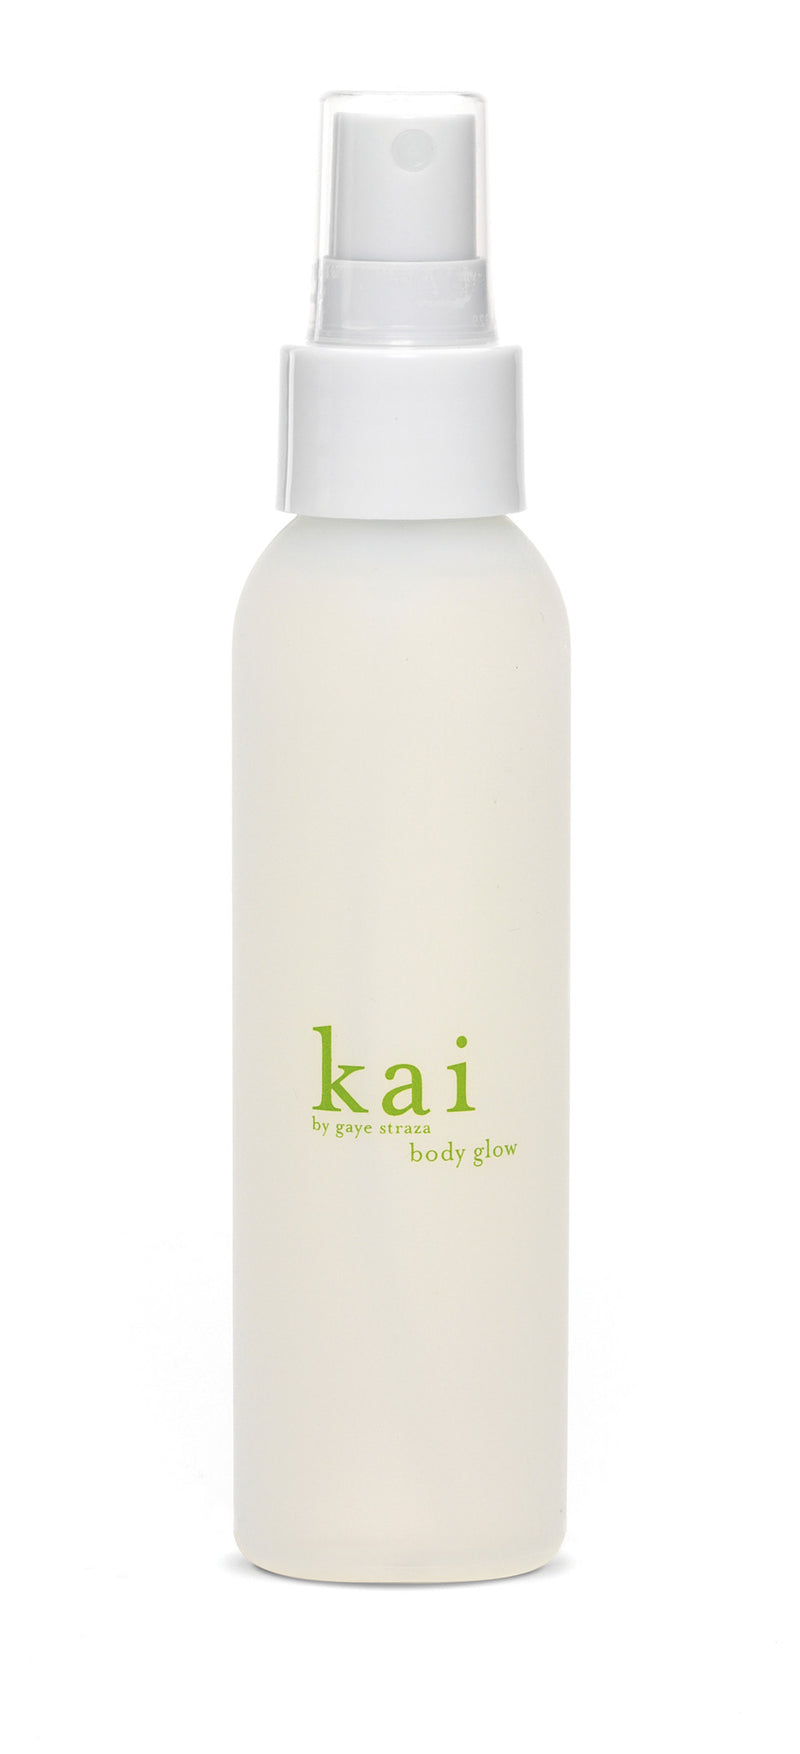 media image for kai body glow design by kai fragrance 1 210